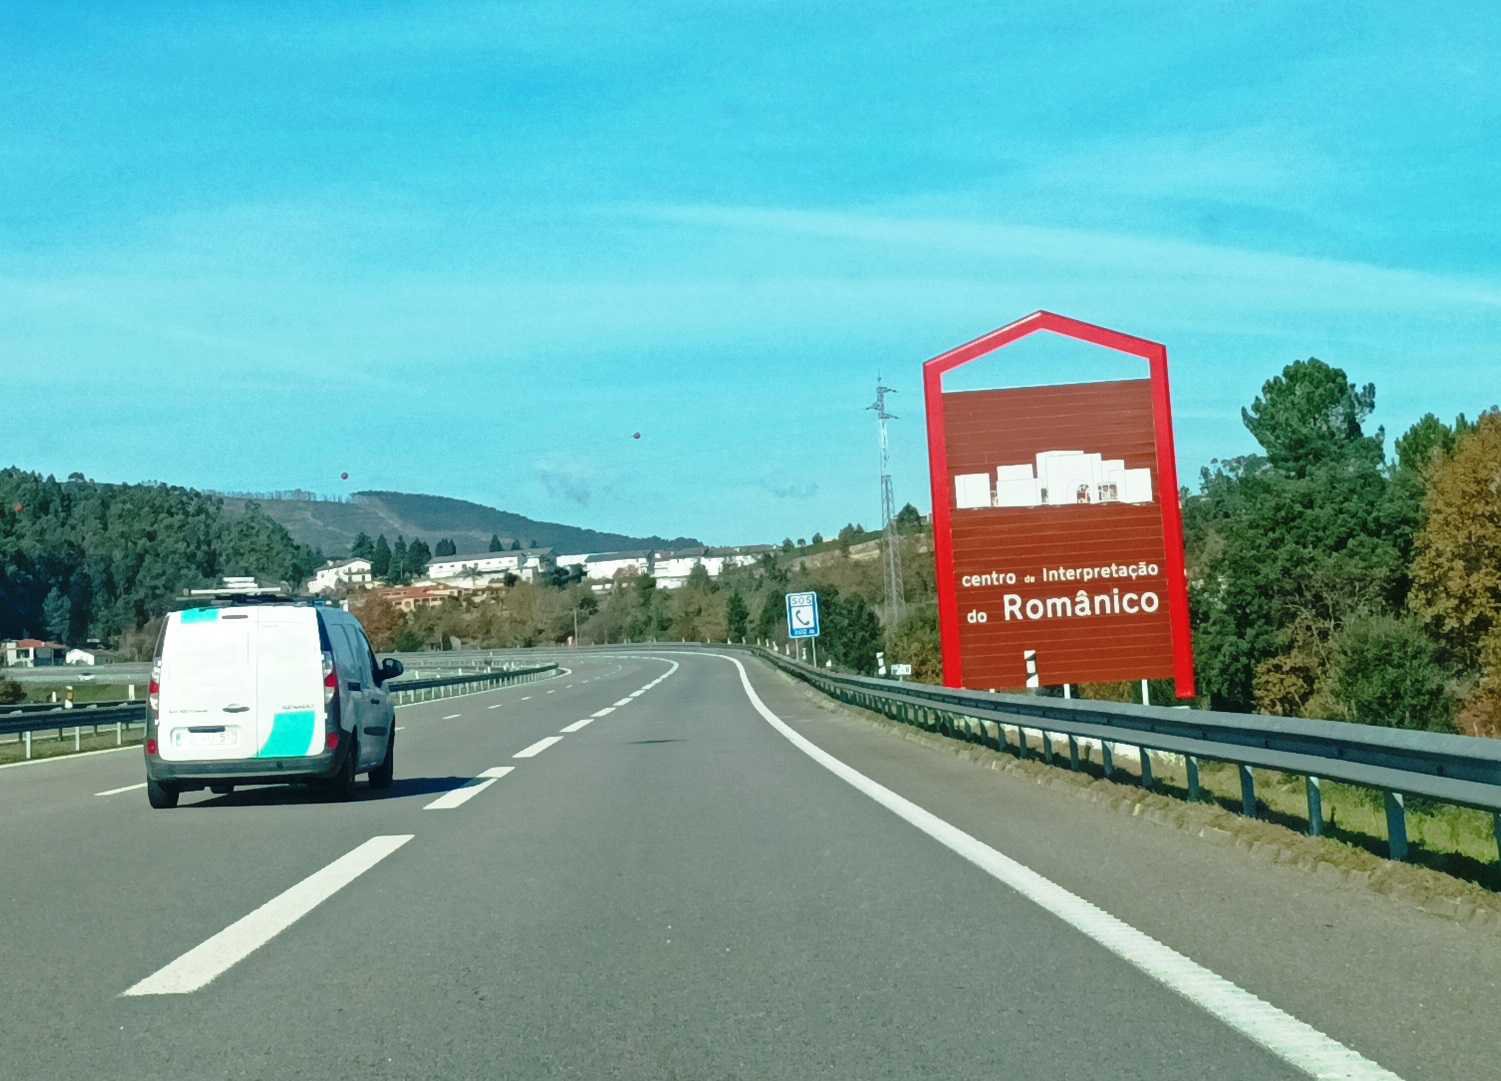 Rota do Românico reforça sinalização nas autoestradas